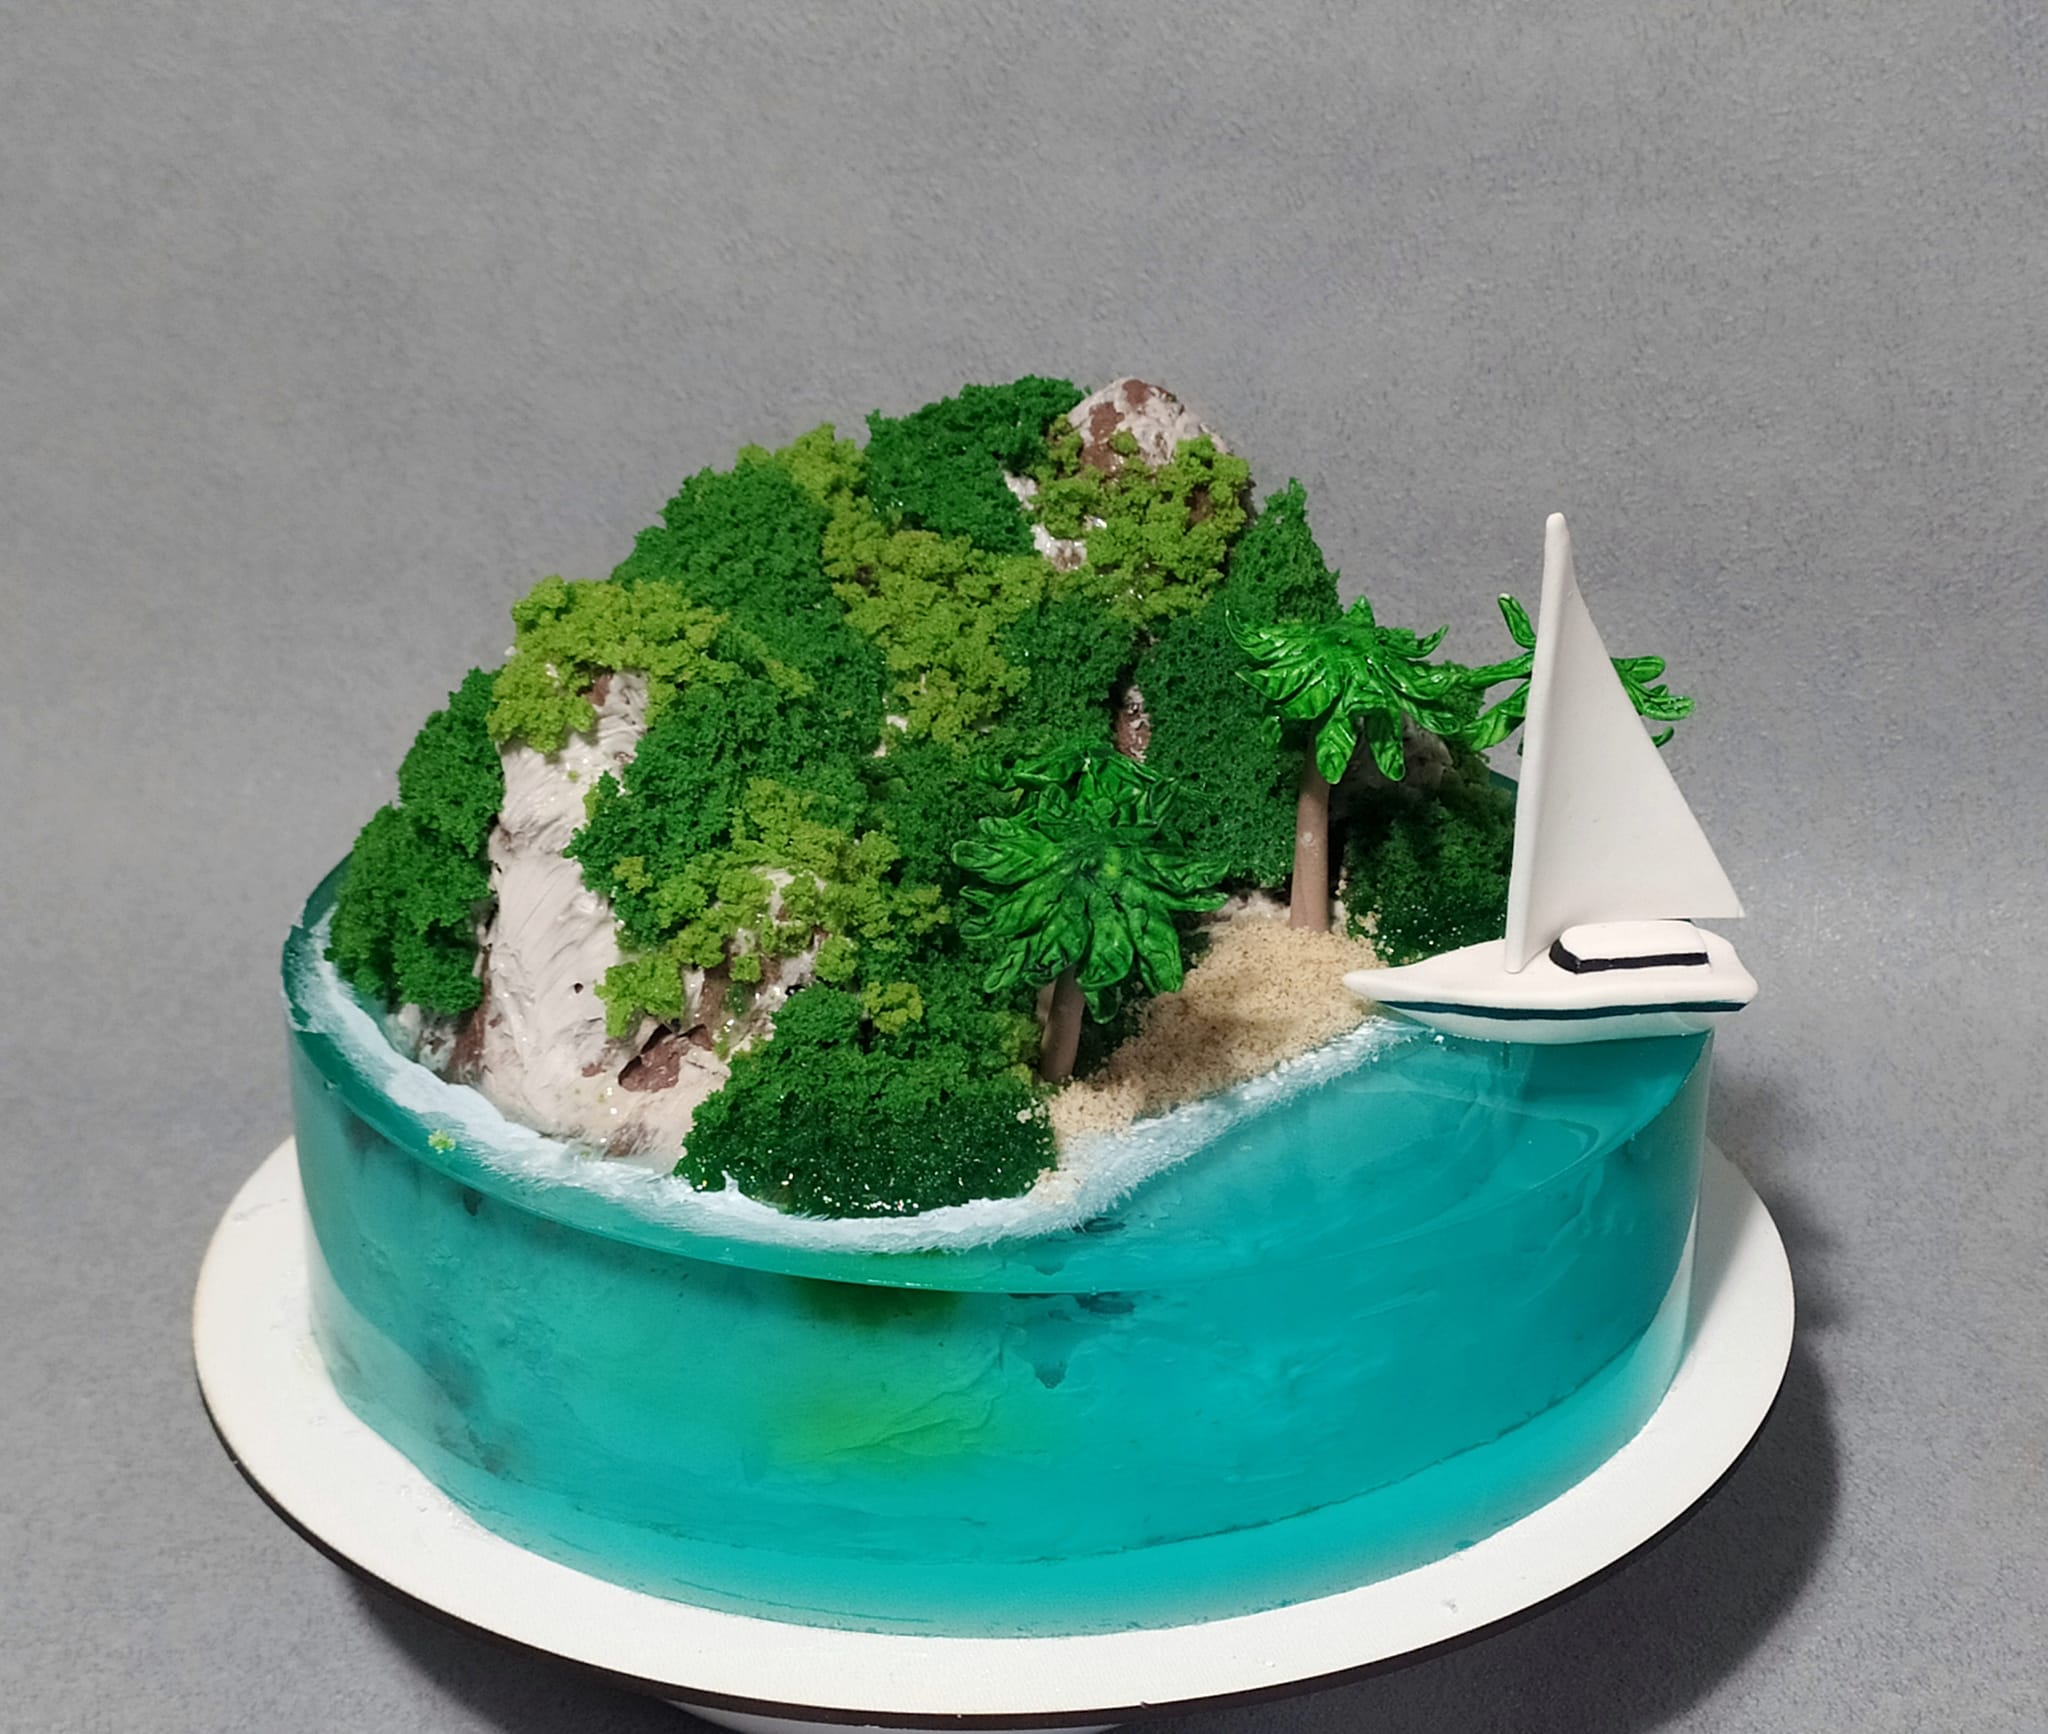 Новости Днепра про Кондитер из Днепра сделал торт в виде райского острова (ФОТО)